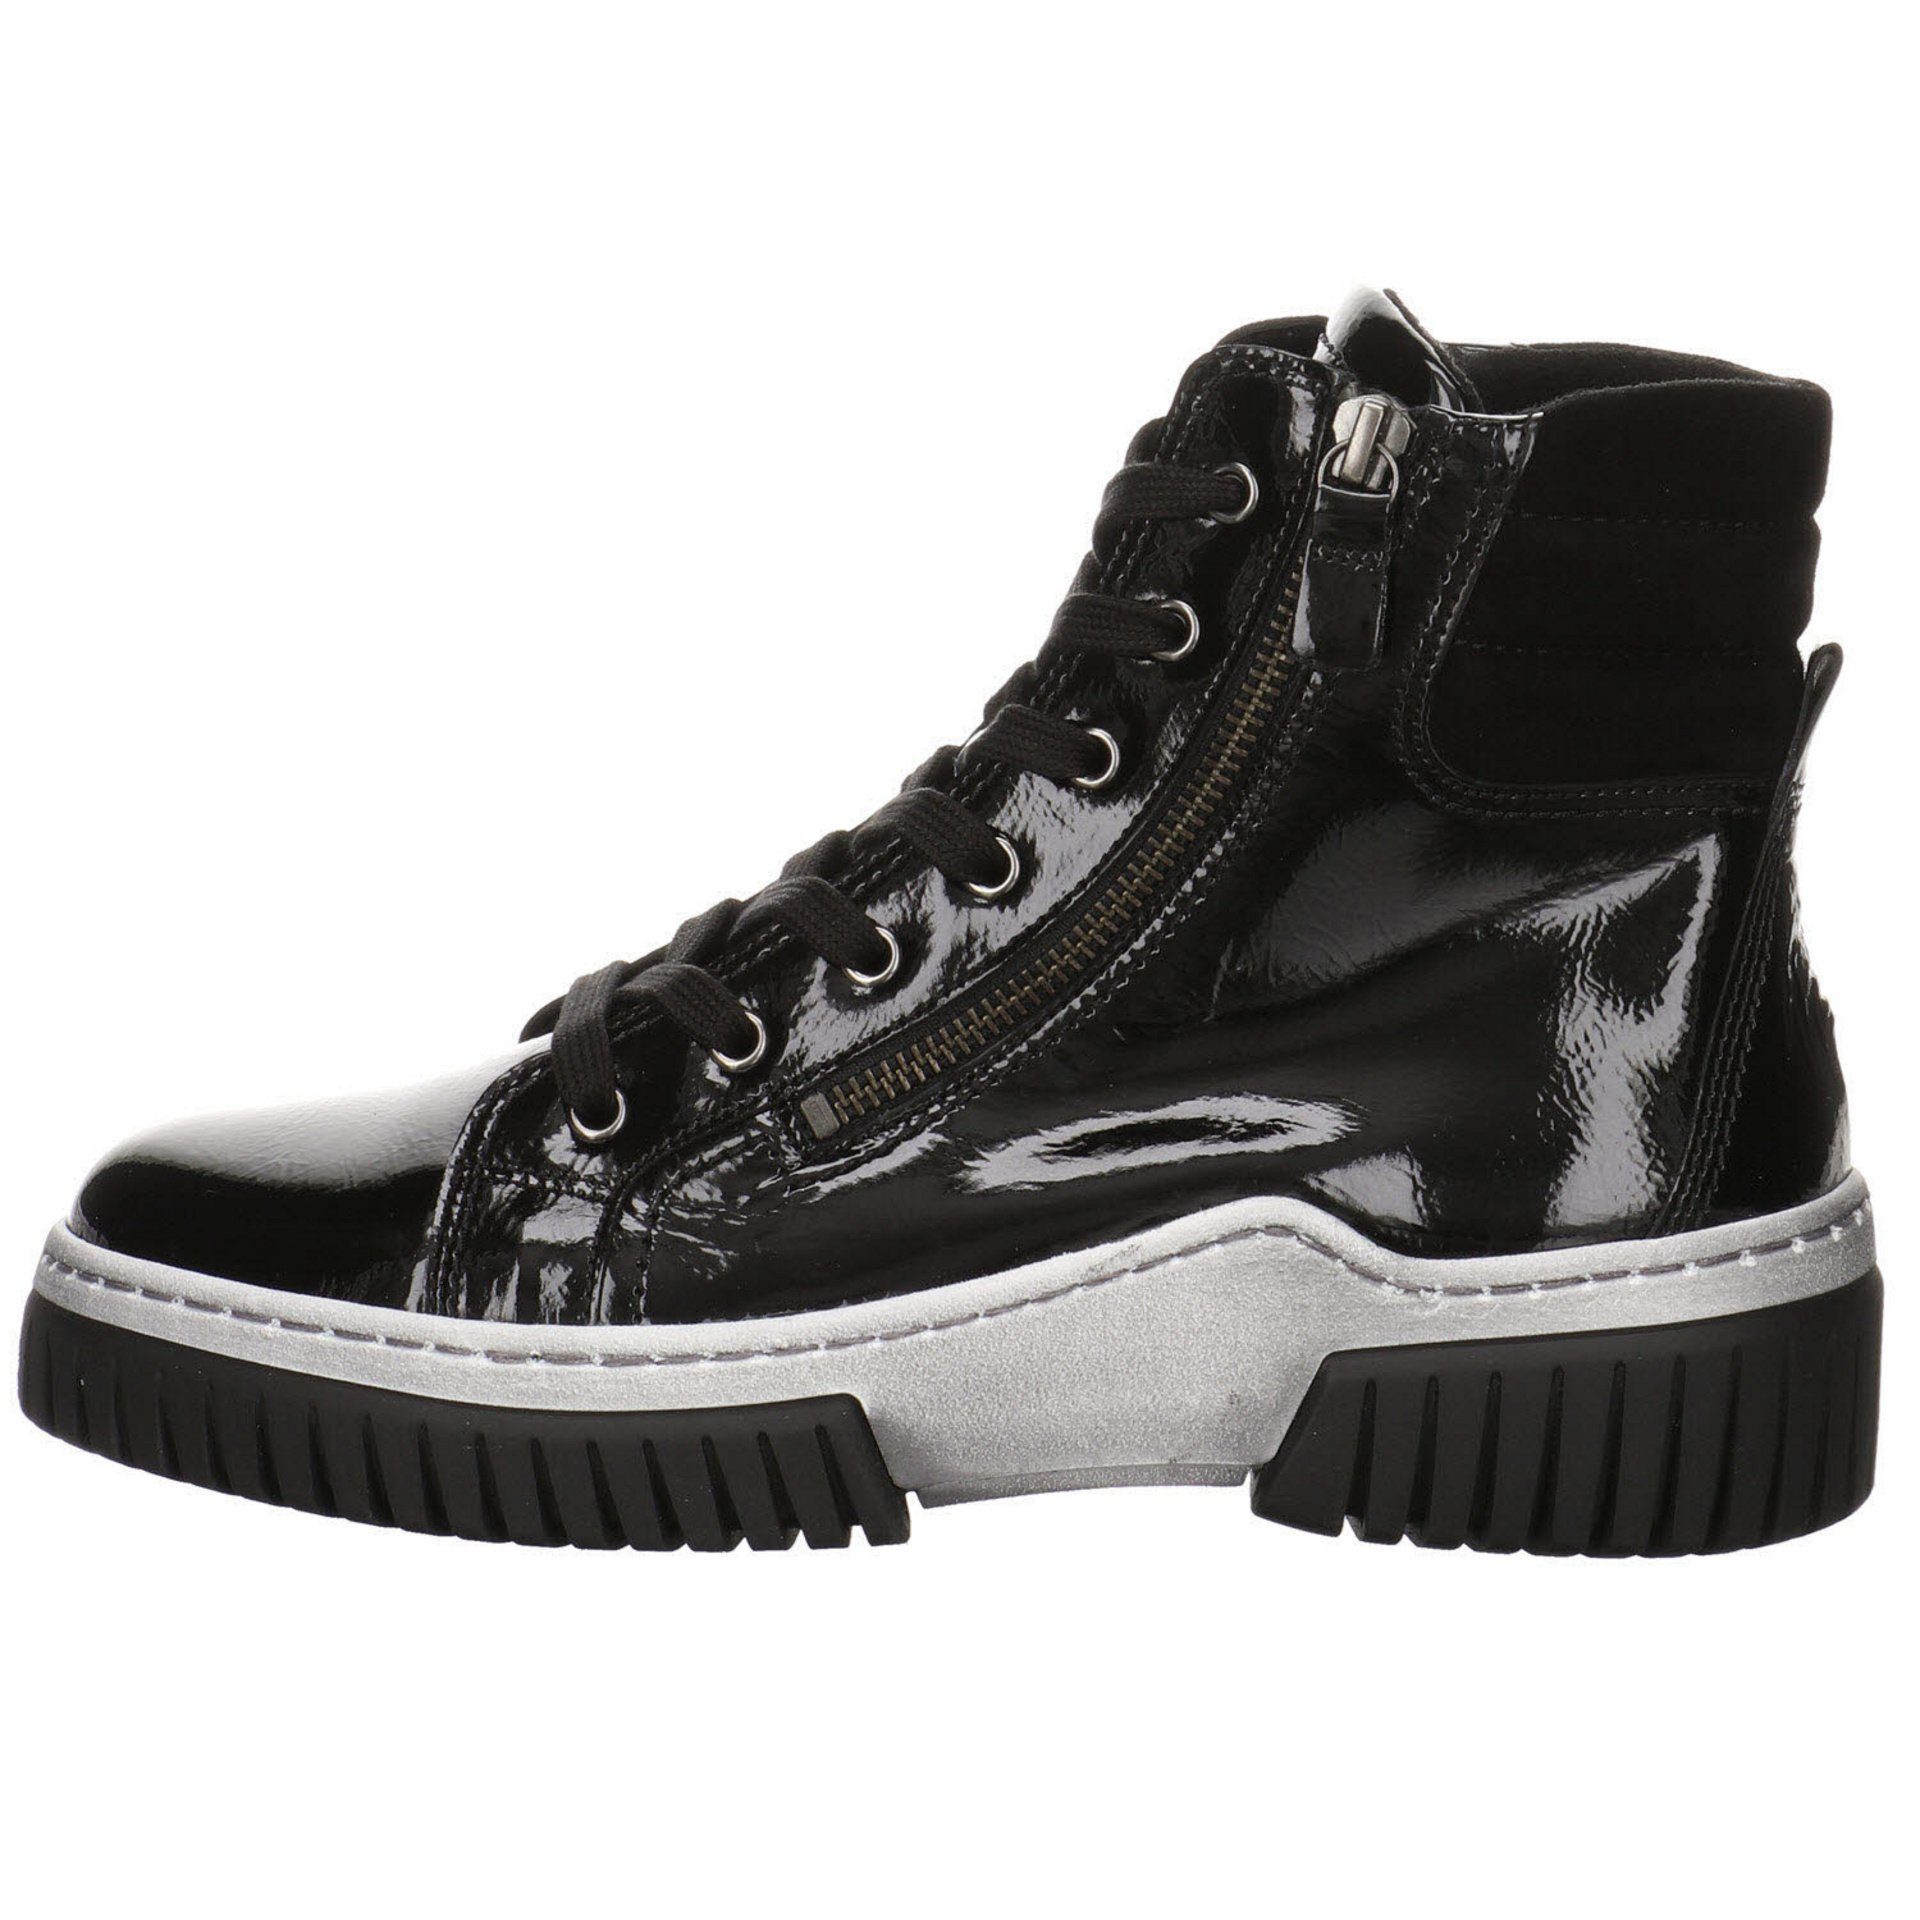 Gabor schwarz(altsilber) Schnürstiefel Elegant Lackleder Boots Schuhe Stiefeletten Damen Freizeit